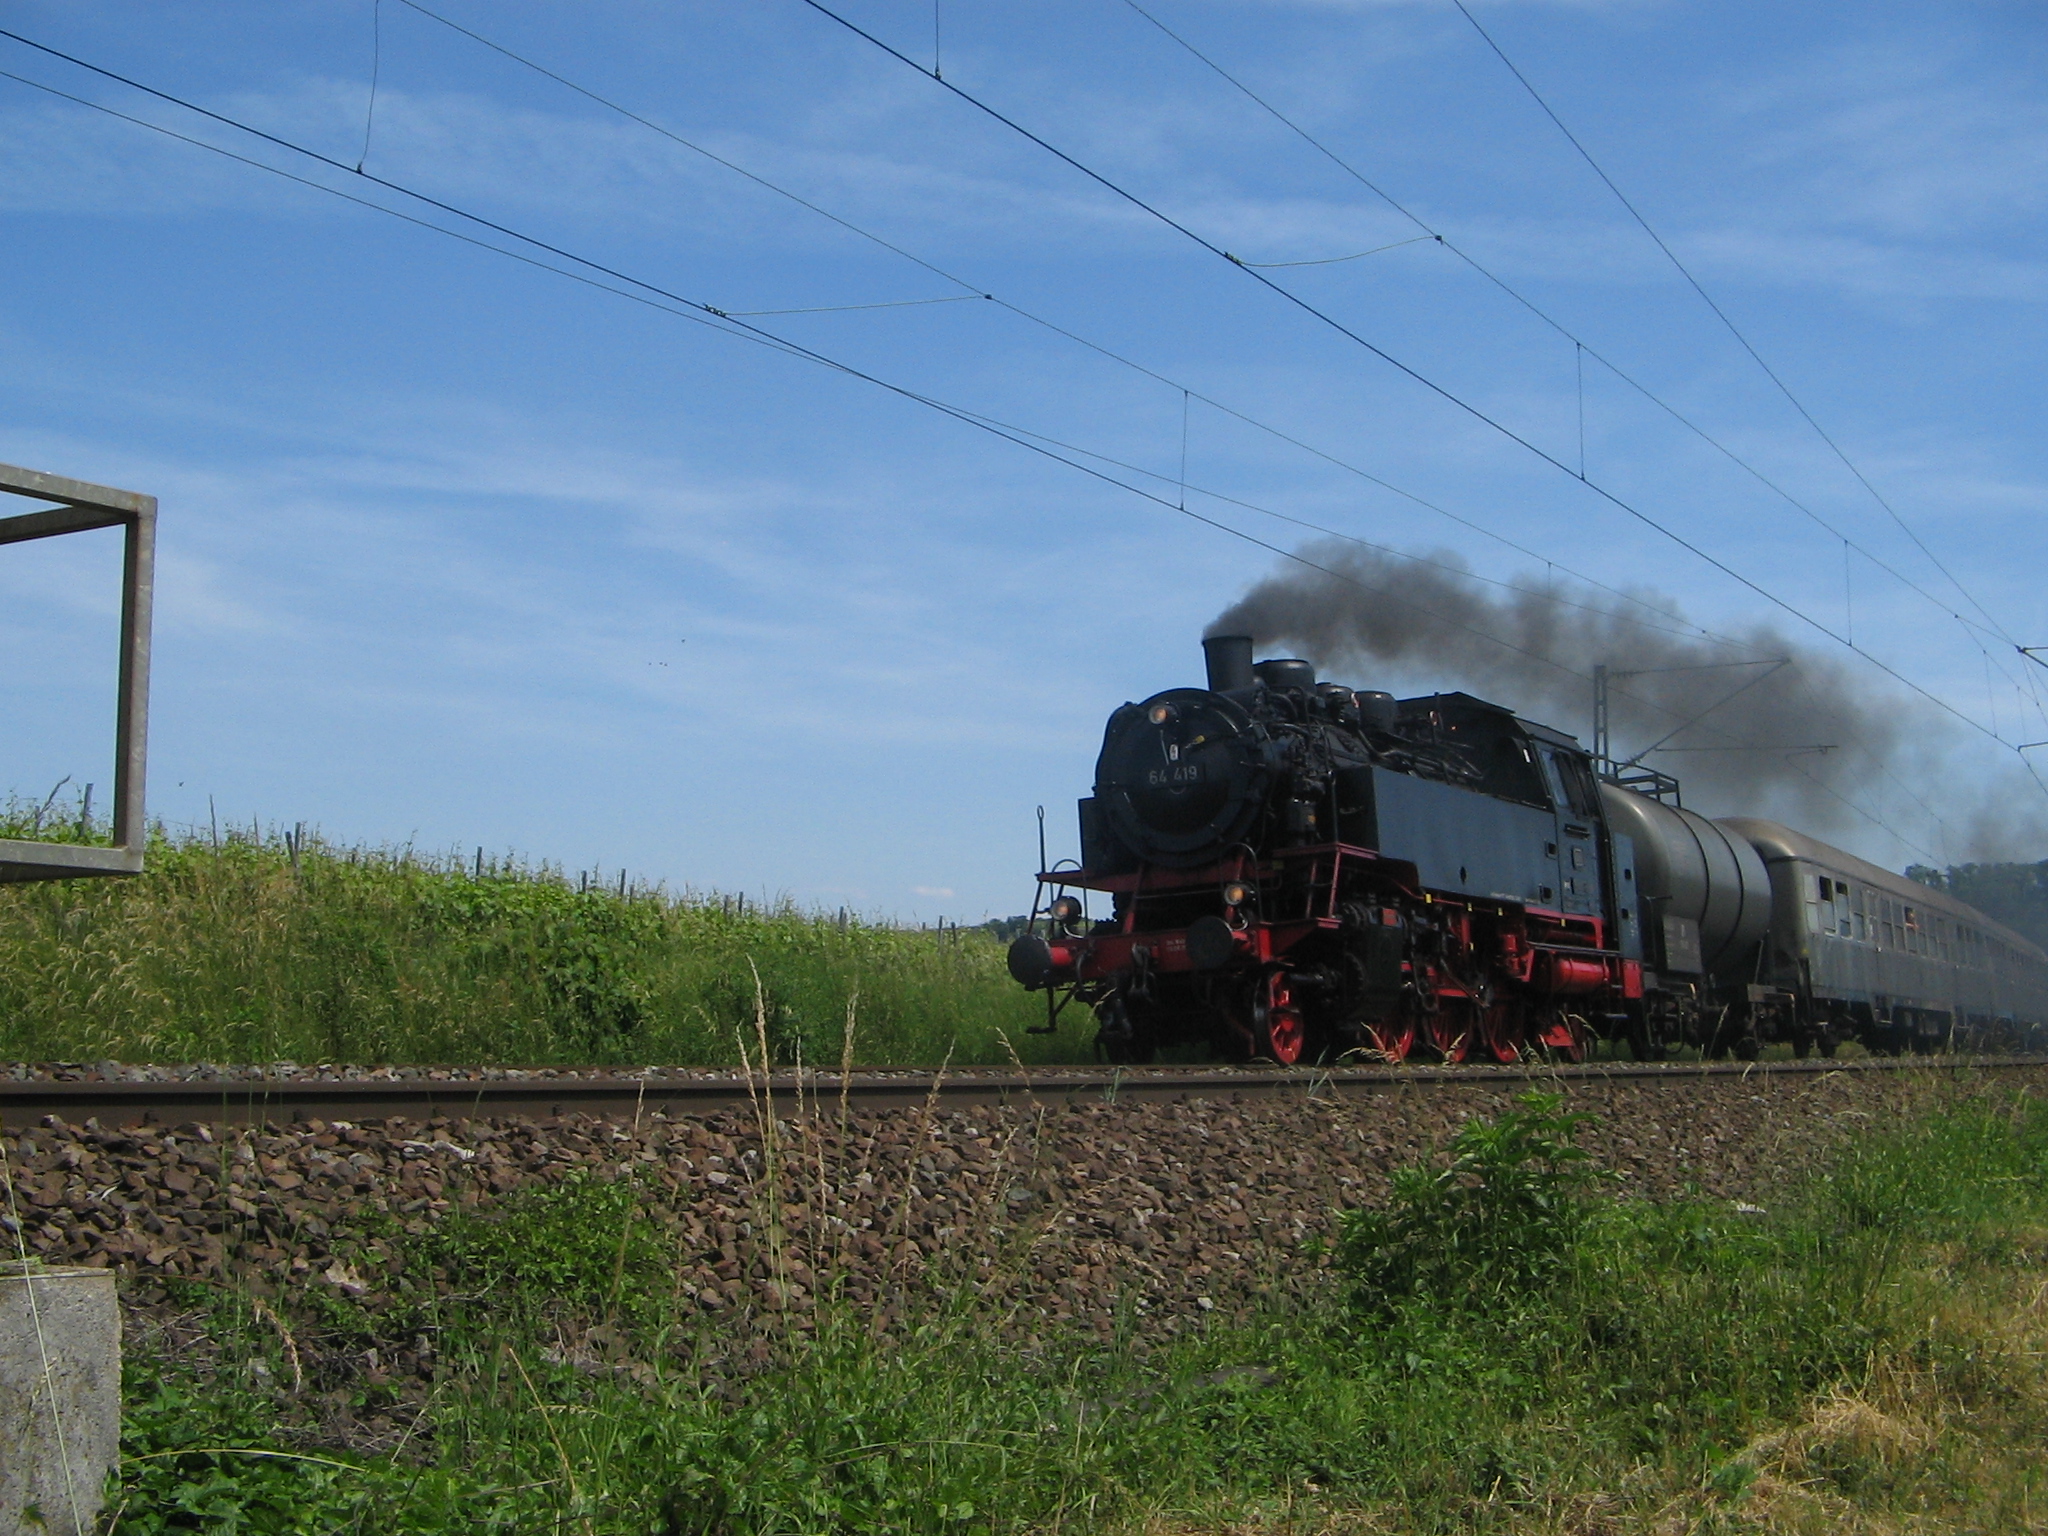 07.06.2014 - Dampflokomotive 64-419 DBK e.V. bei Lauffen am Neckar